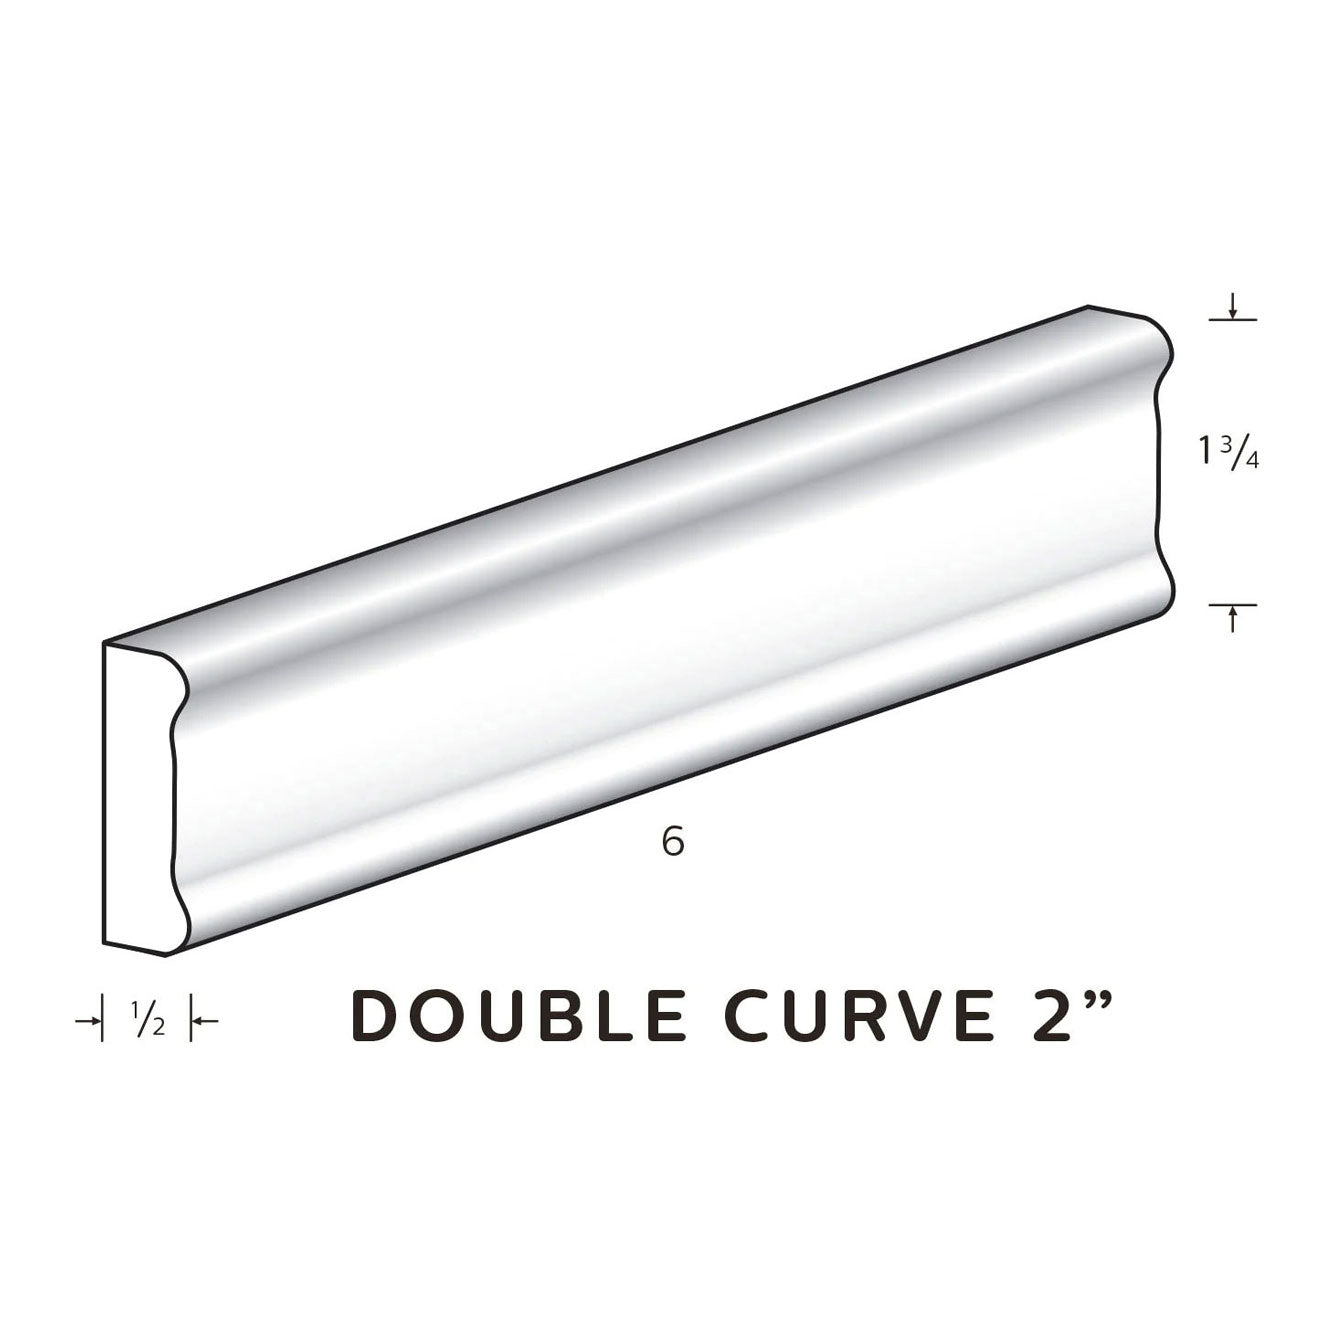 Double Curve